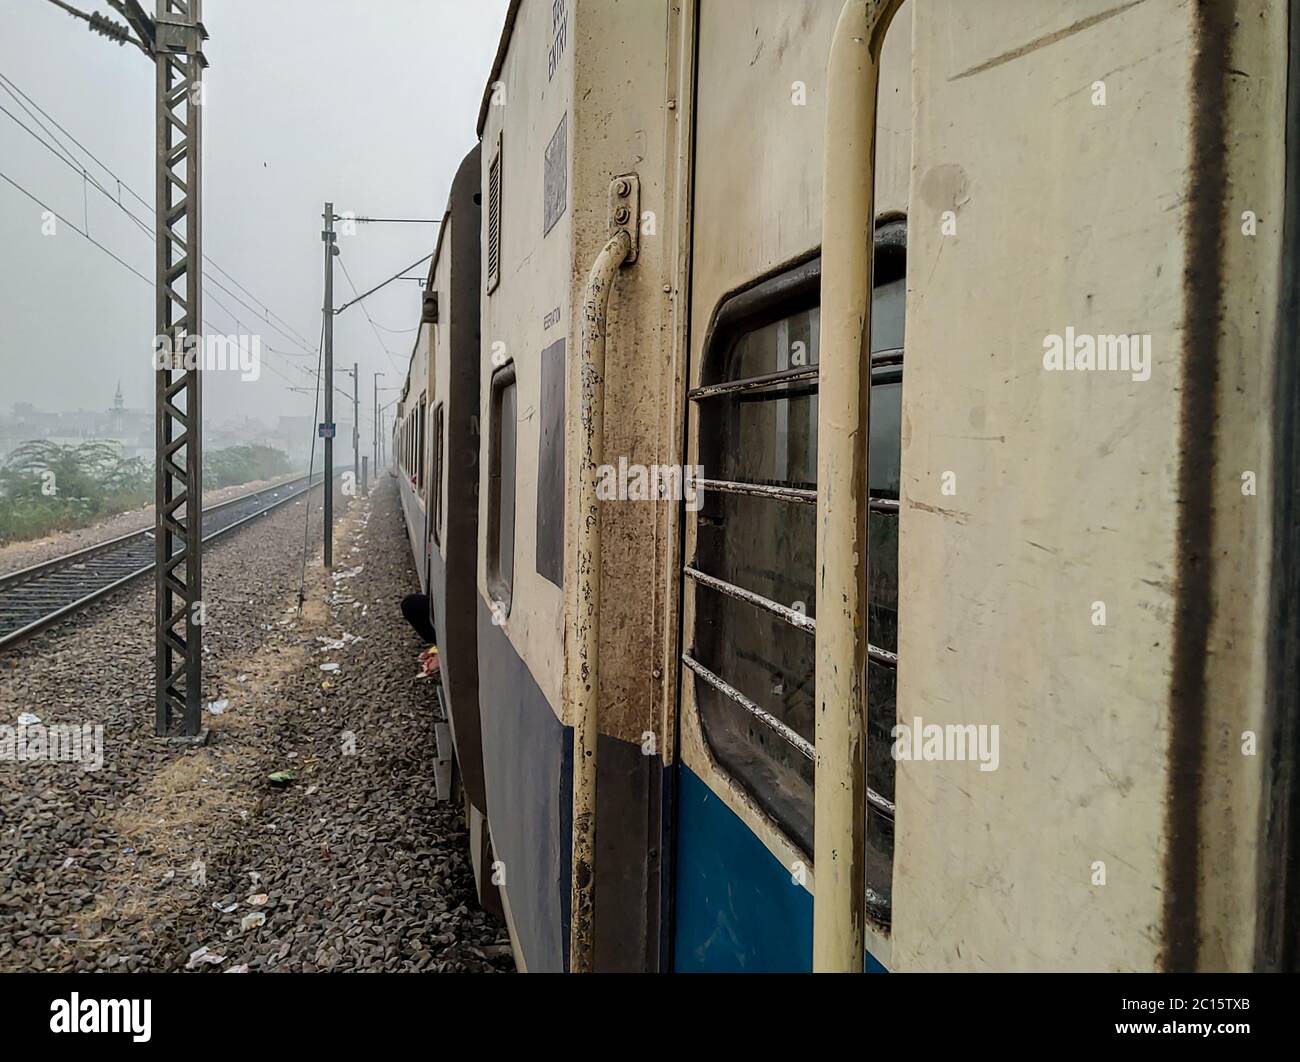 Redaktionell. Vom 18. April 2020, Lage - Neu Delhi. Eine Voransicht von vor der Zugtür. Stockfoto